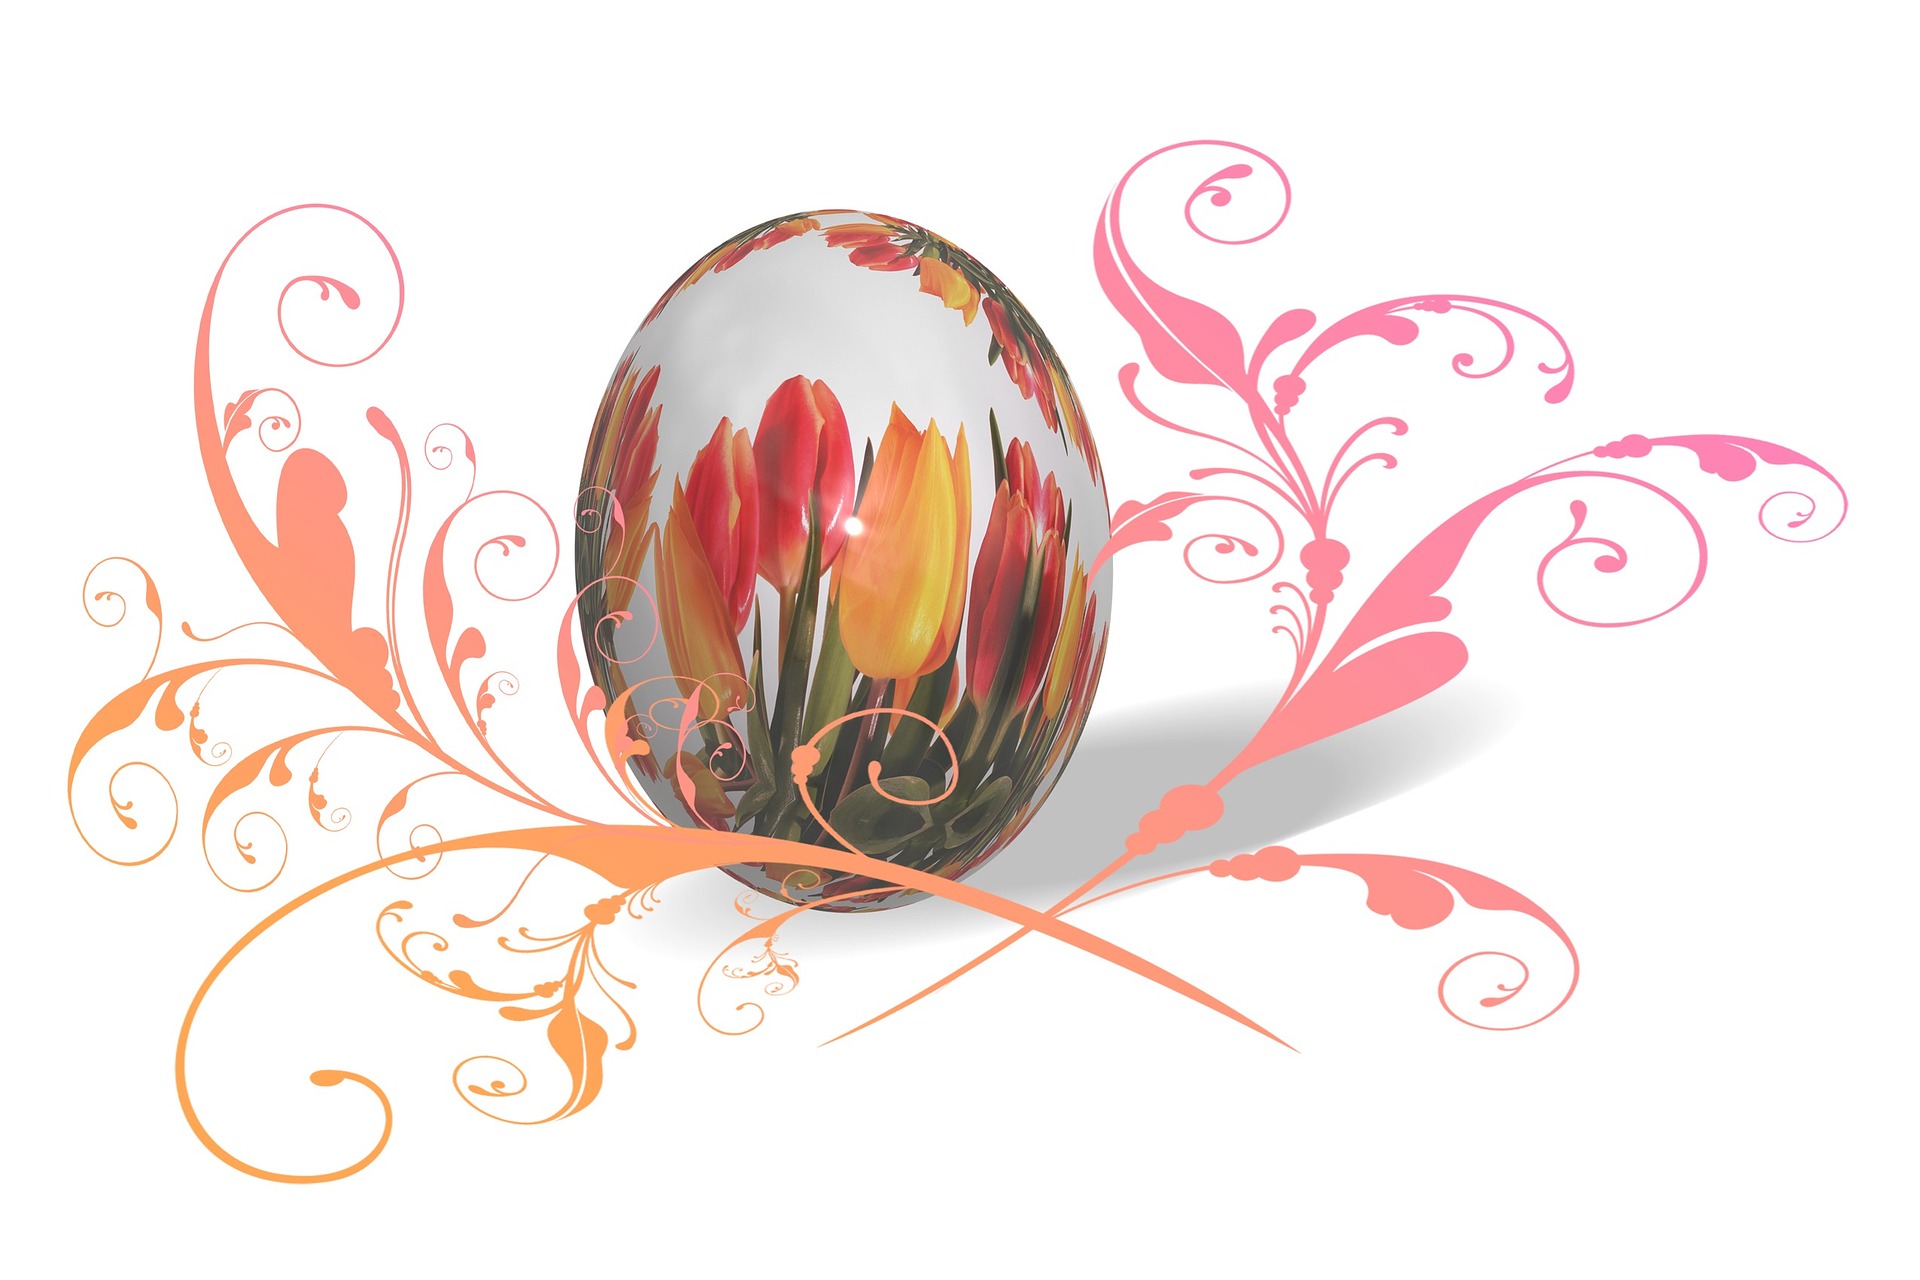 Jajko z namalowanymi kwiatami, obok pomarańczowo-różowe wzorki